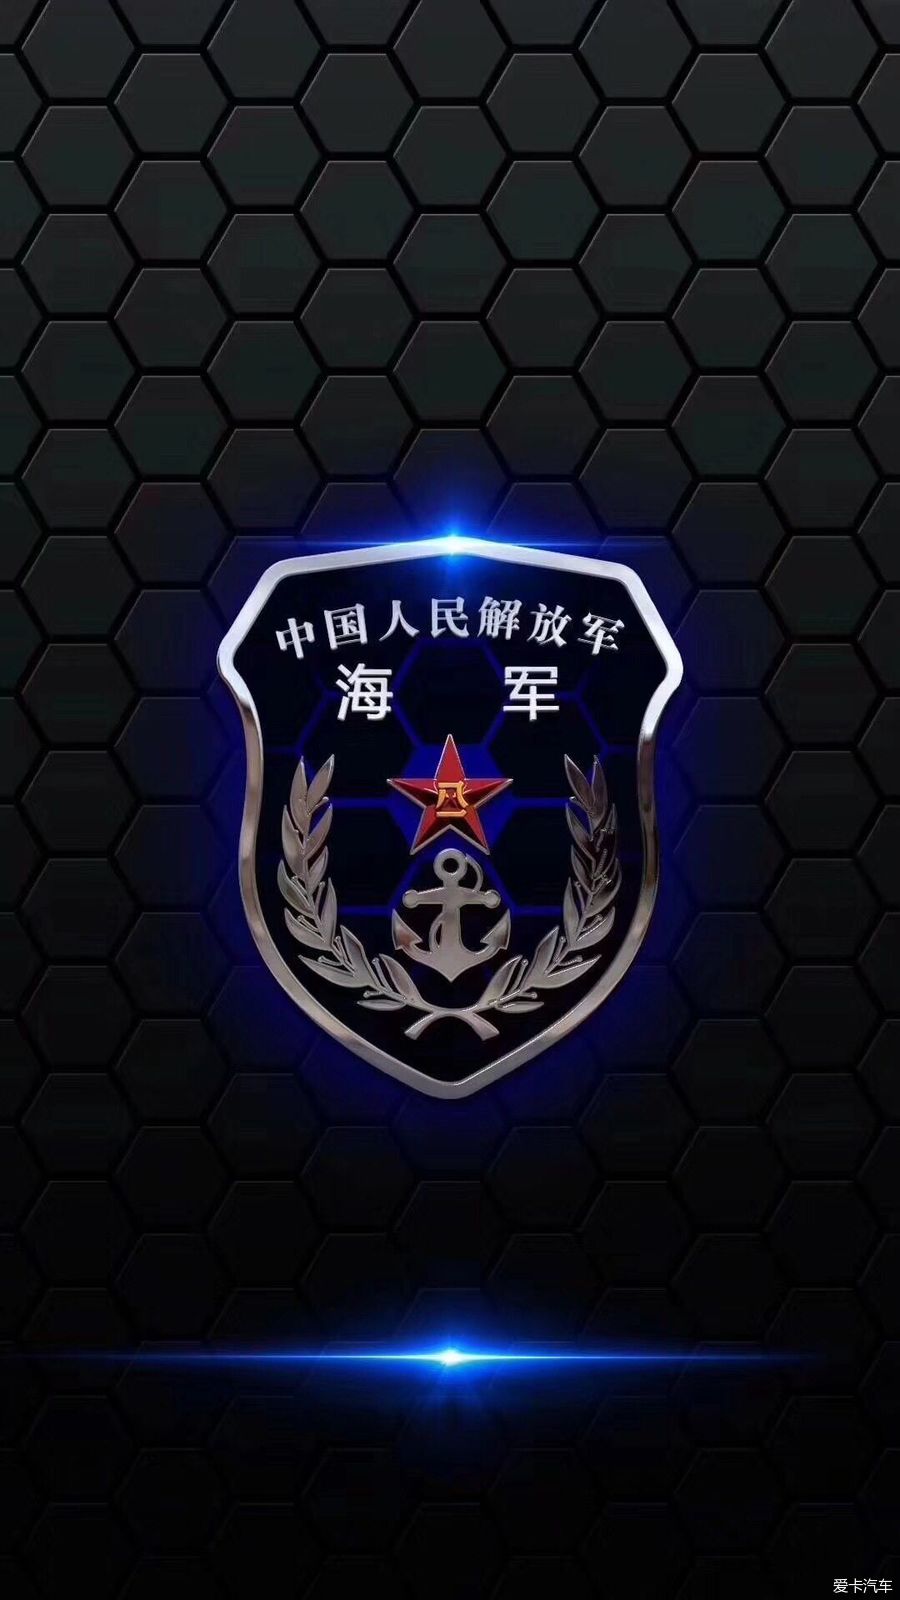 二,中国人民解放军海军臂章 值得我们自豪的是中国人民海军现役舰艇总